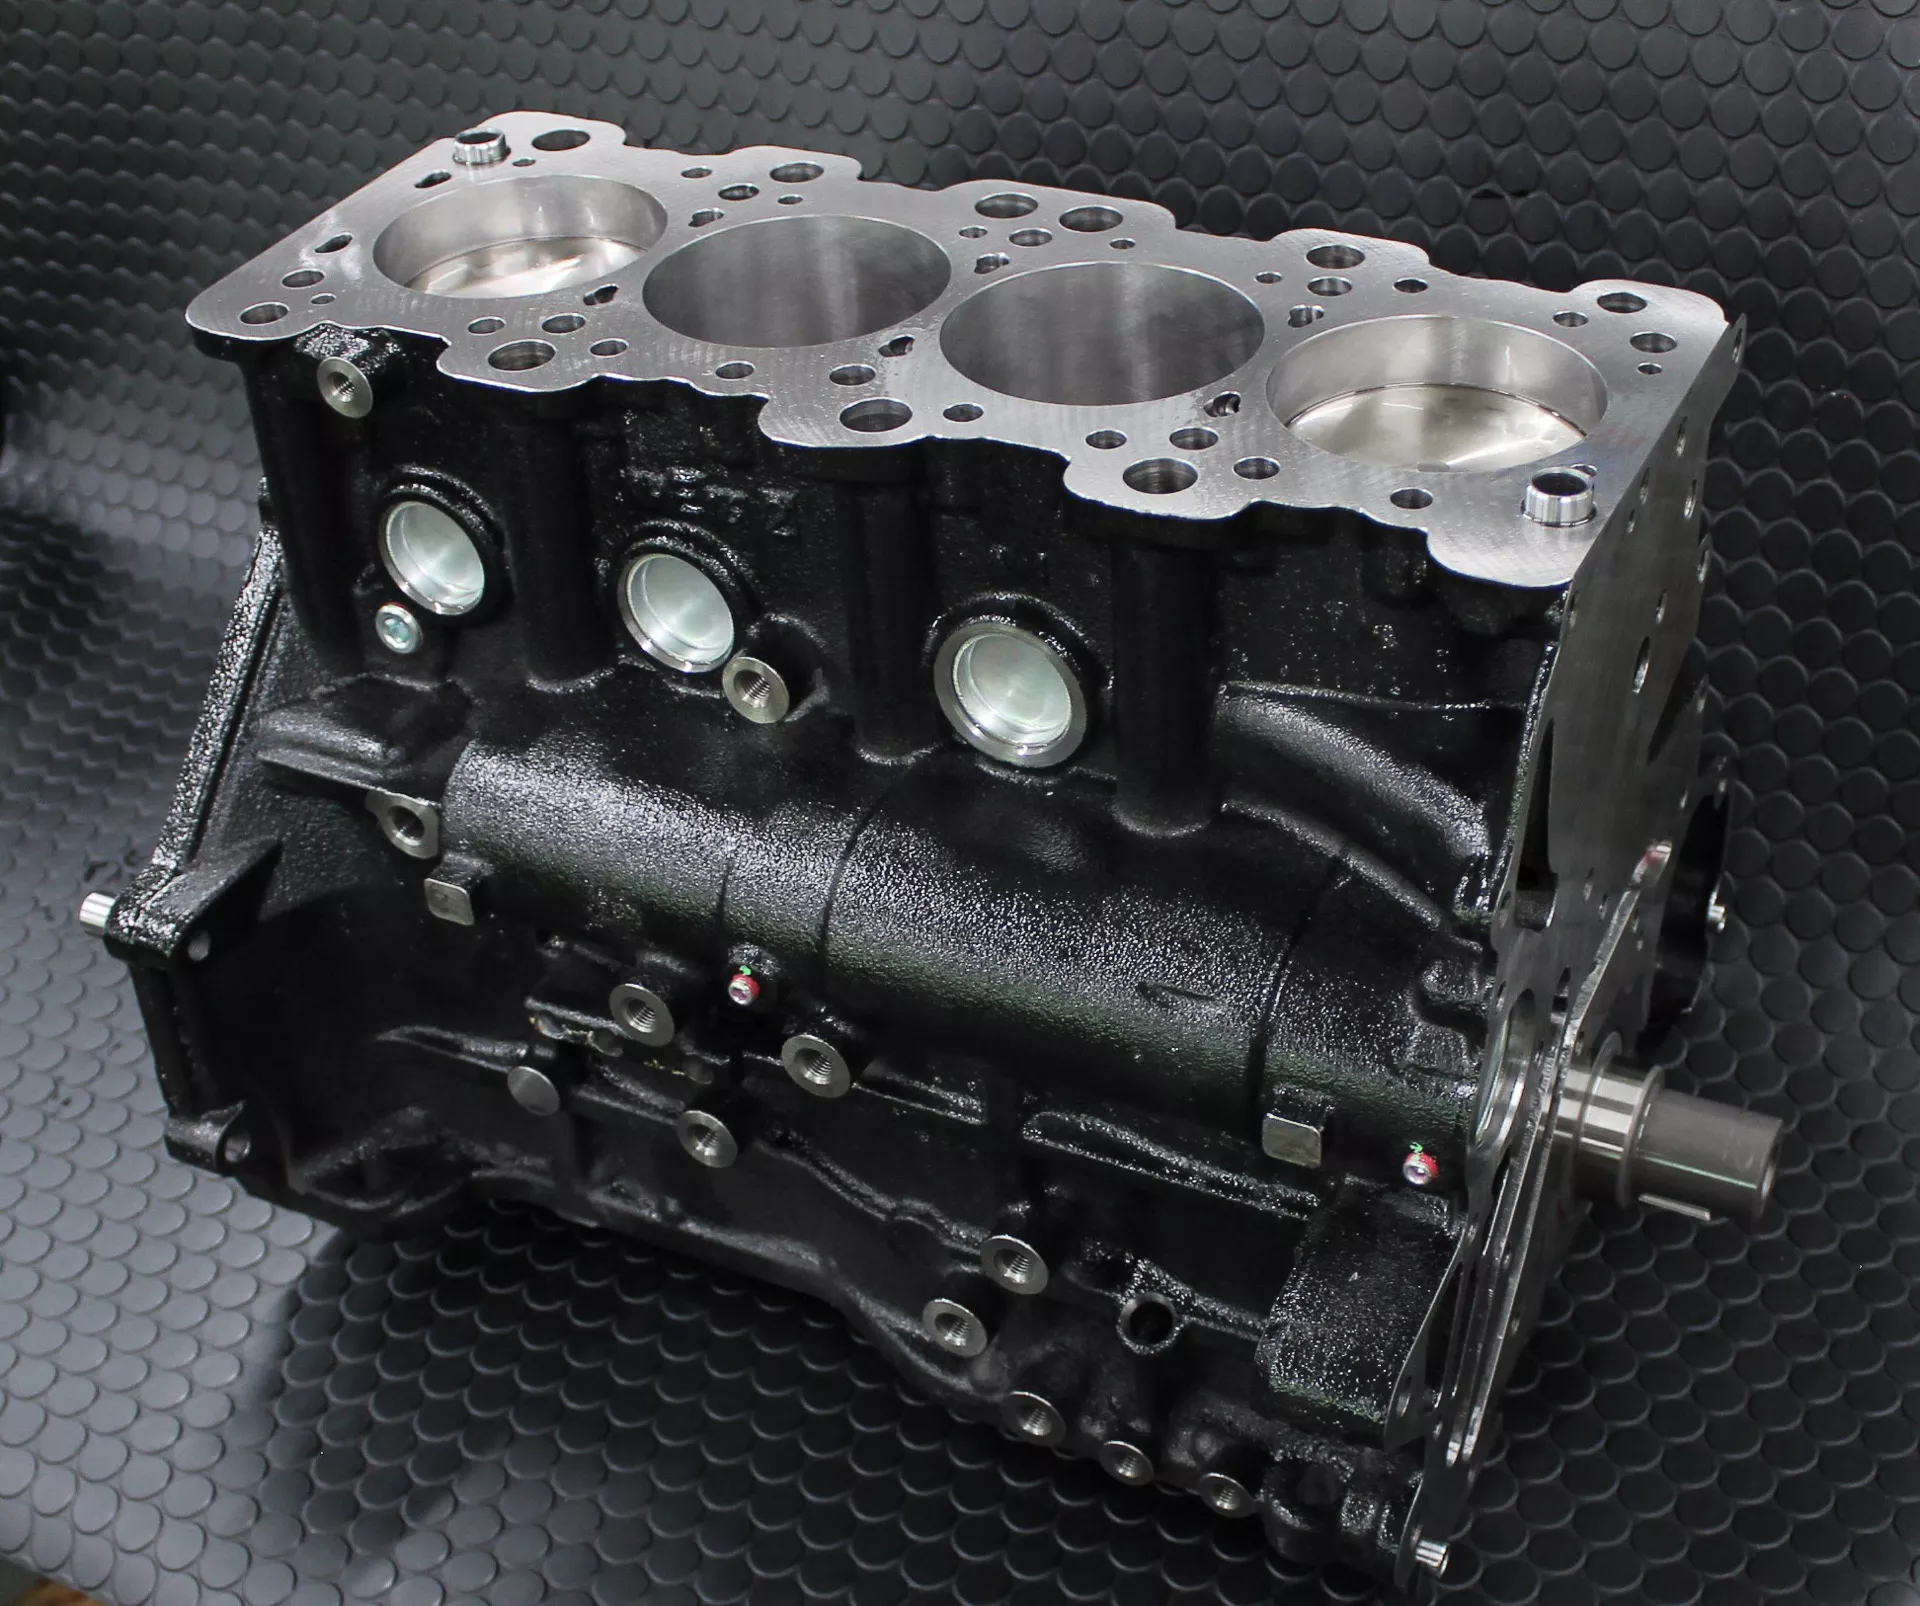 HKS pone a la venta el bloque motor 4G63 de Mitsubishi con 2.3 litros para el Mitsubishi Lancer EVO